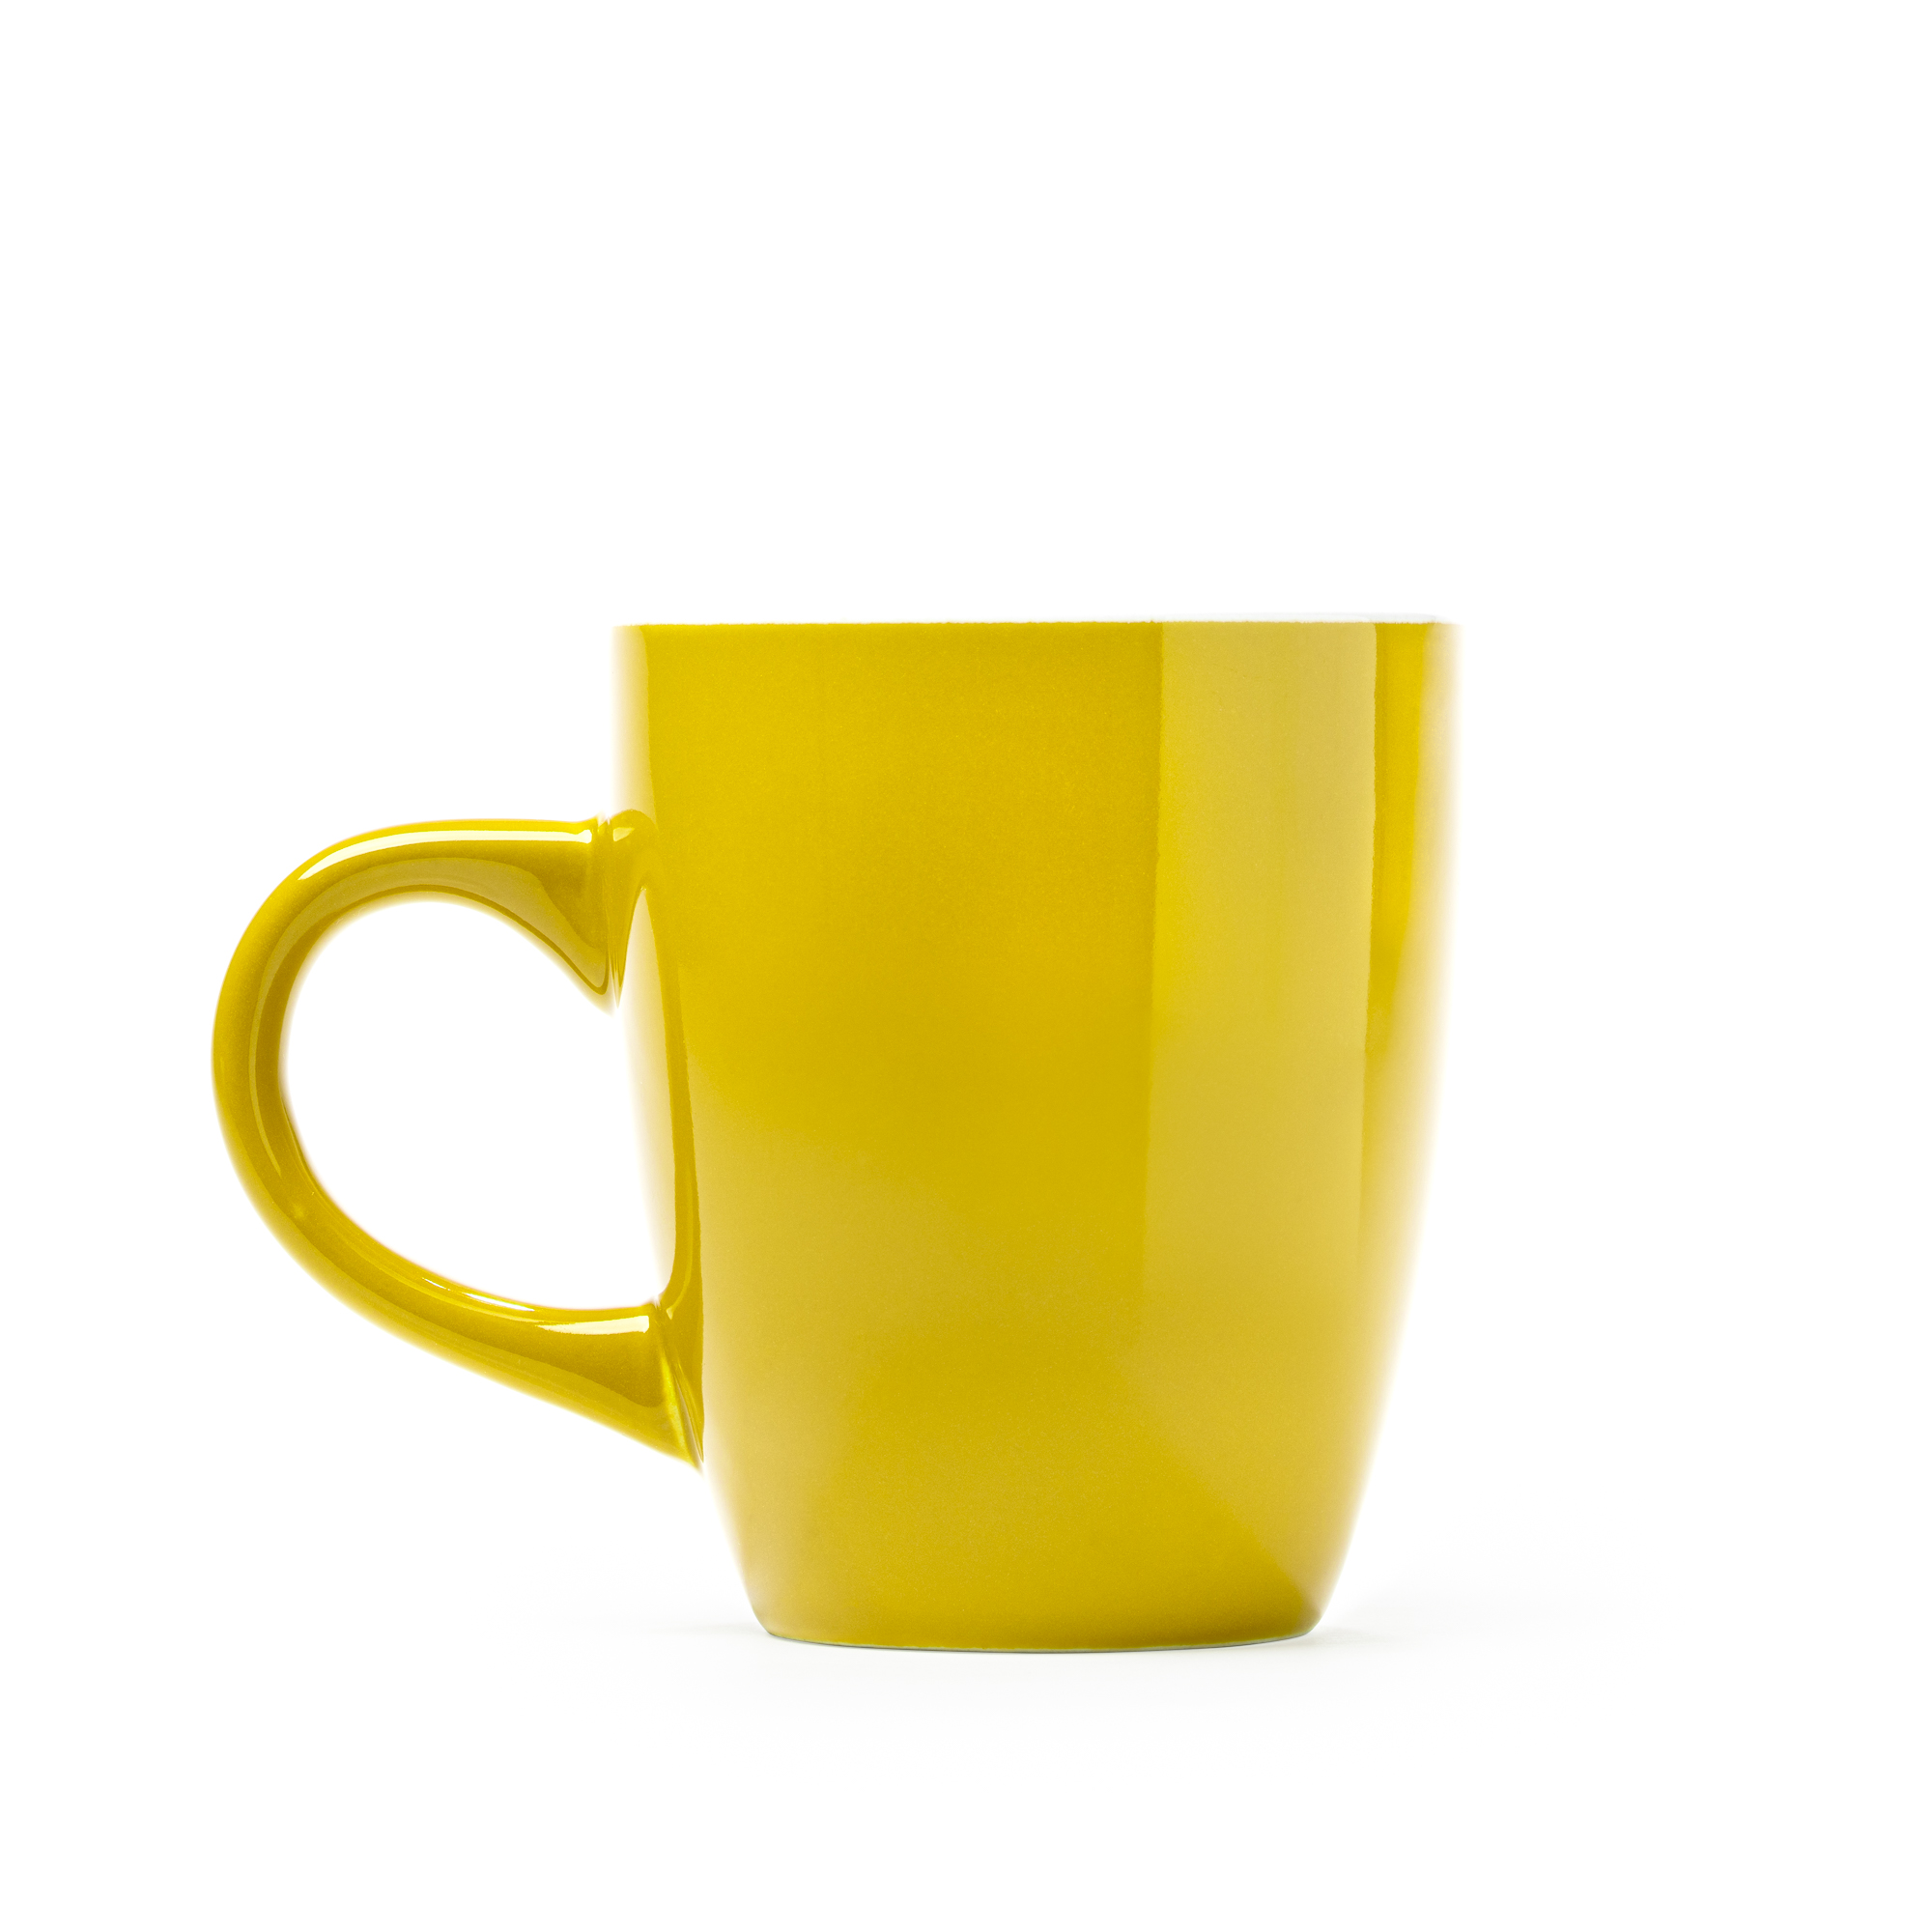 7011-omero-tazza-in-ceramica-300ml-giallo.jpg